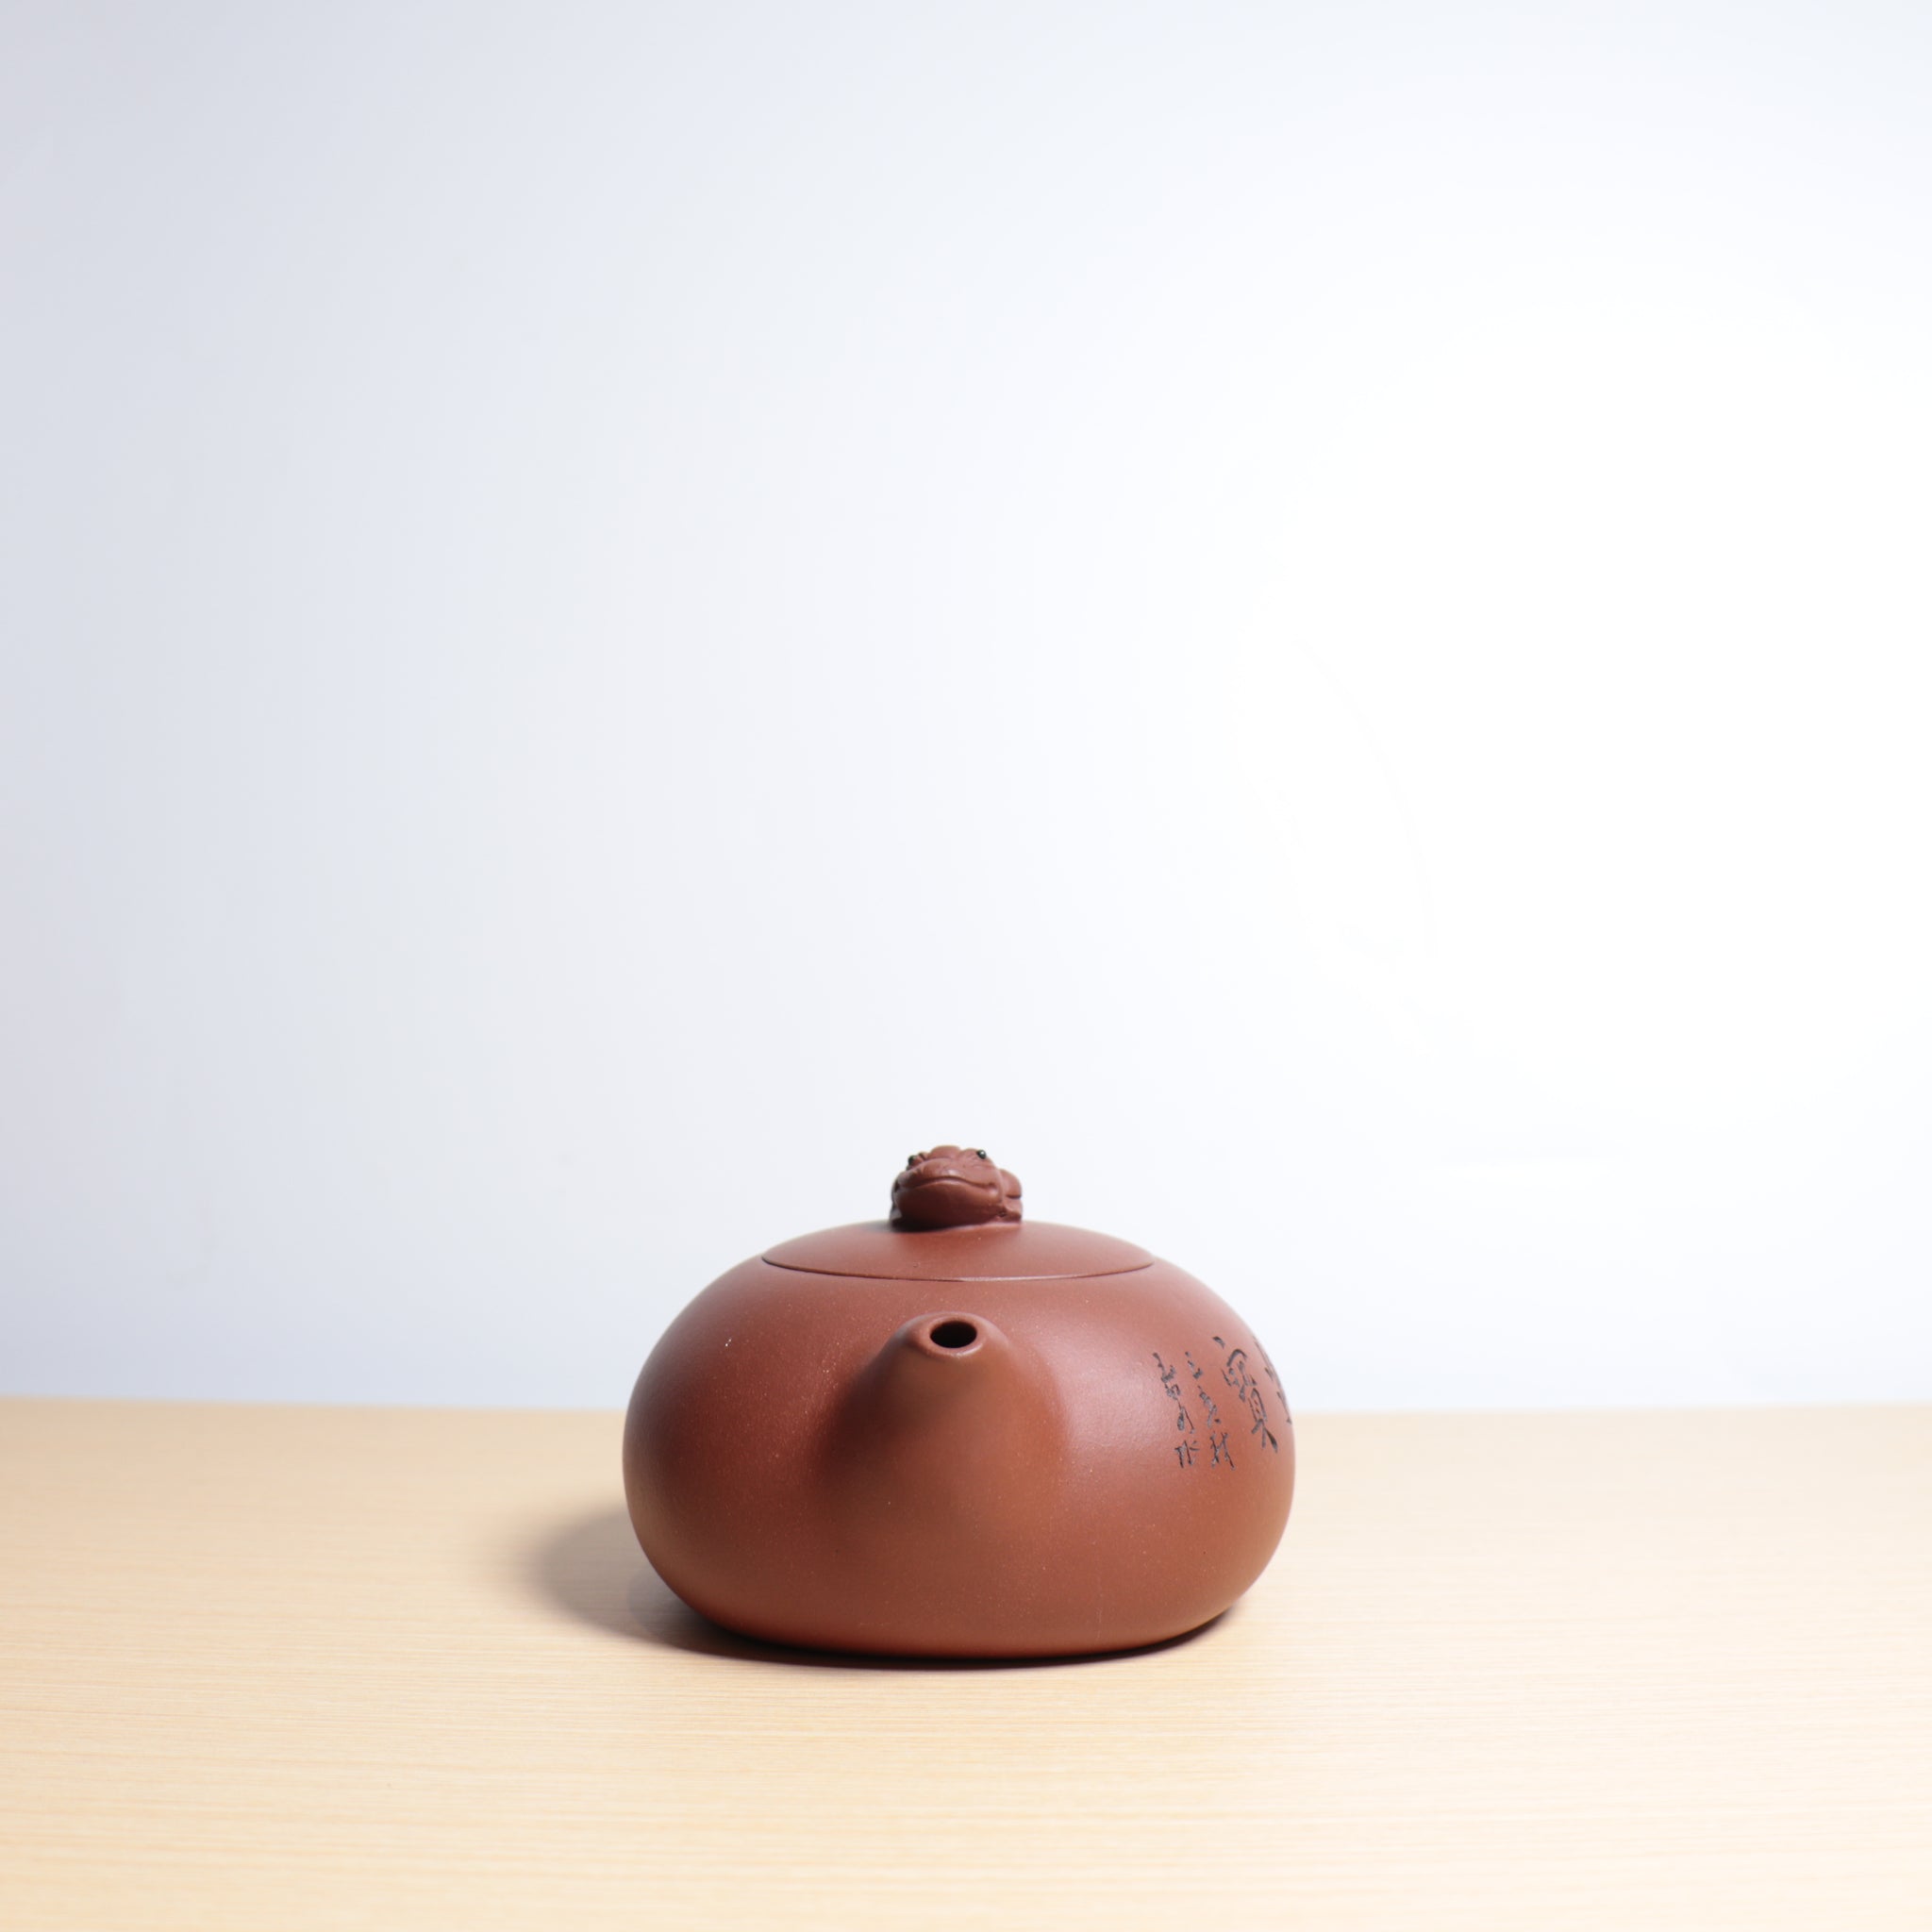 【招財進寶】清水泥雕刻紫砂茶壺